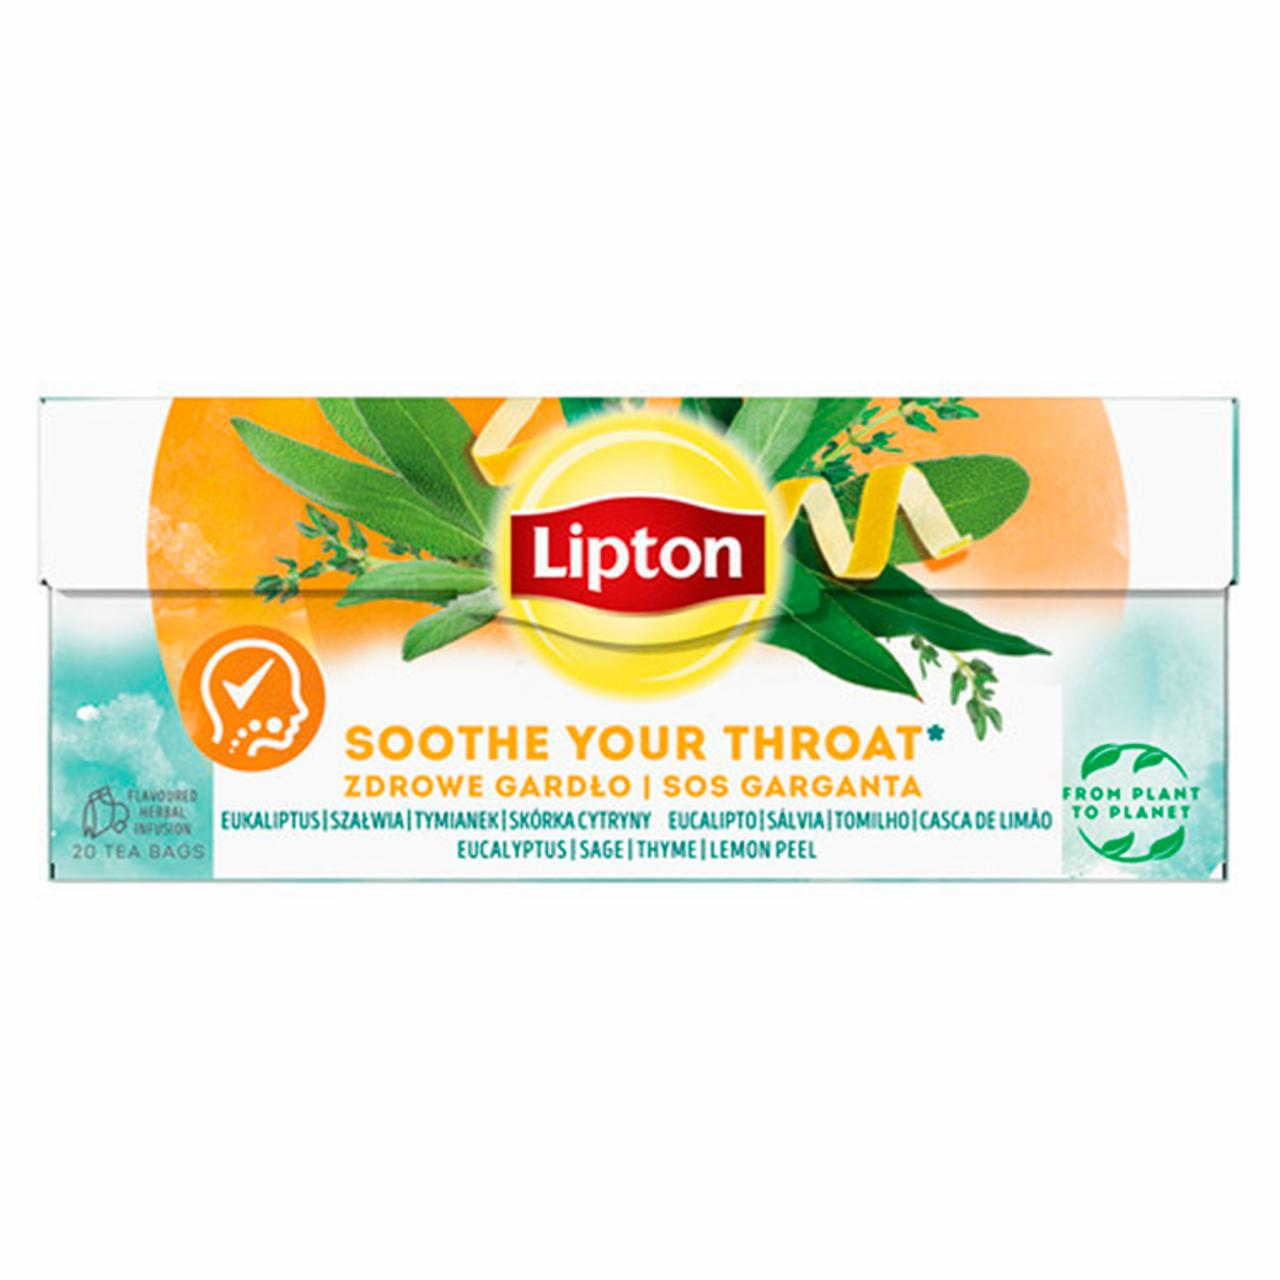 Zdjęcia - Lipton Herbatka ziołowa z naturalnym aromatem zdrowe gardło 26 g (20 torebek)